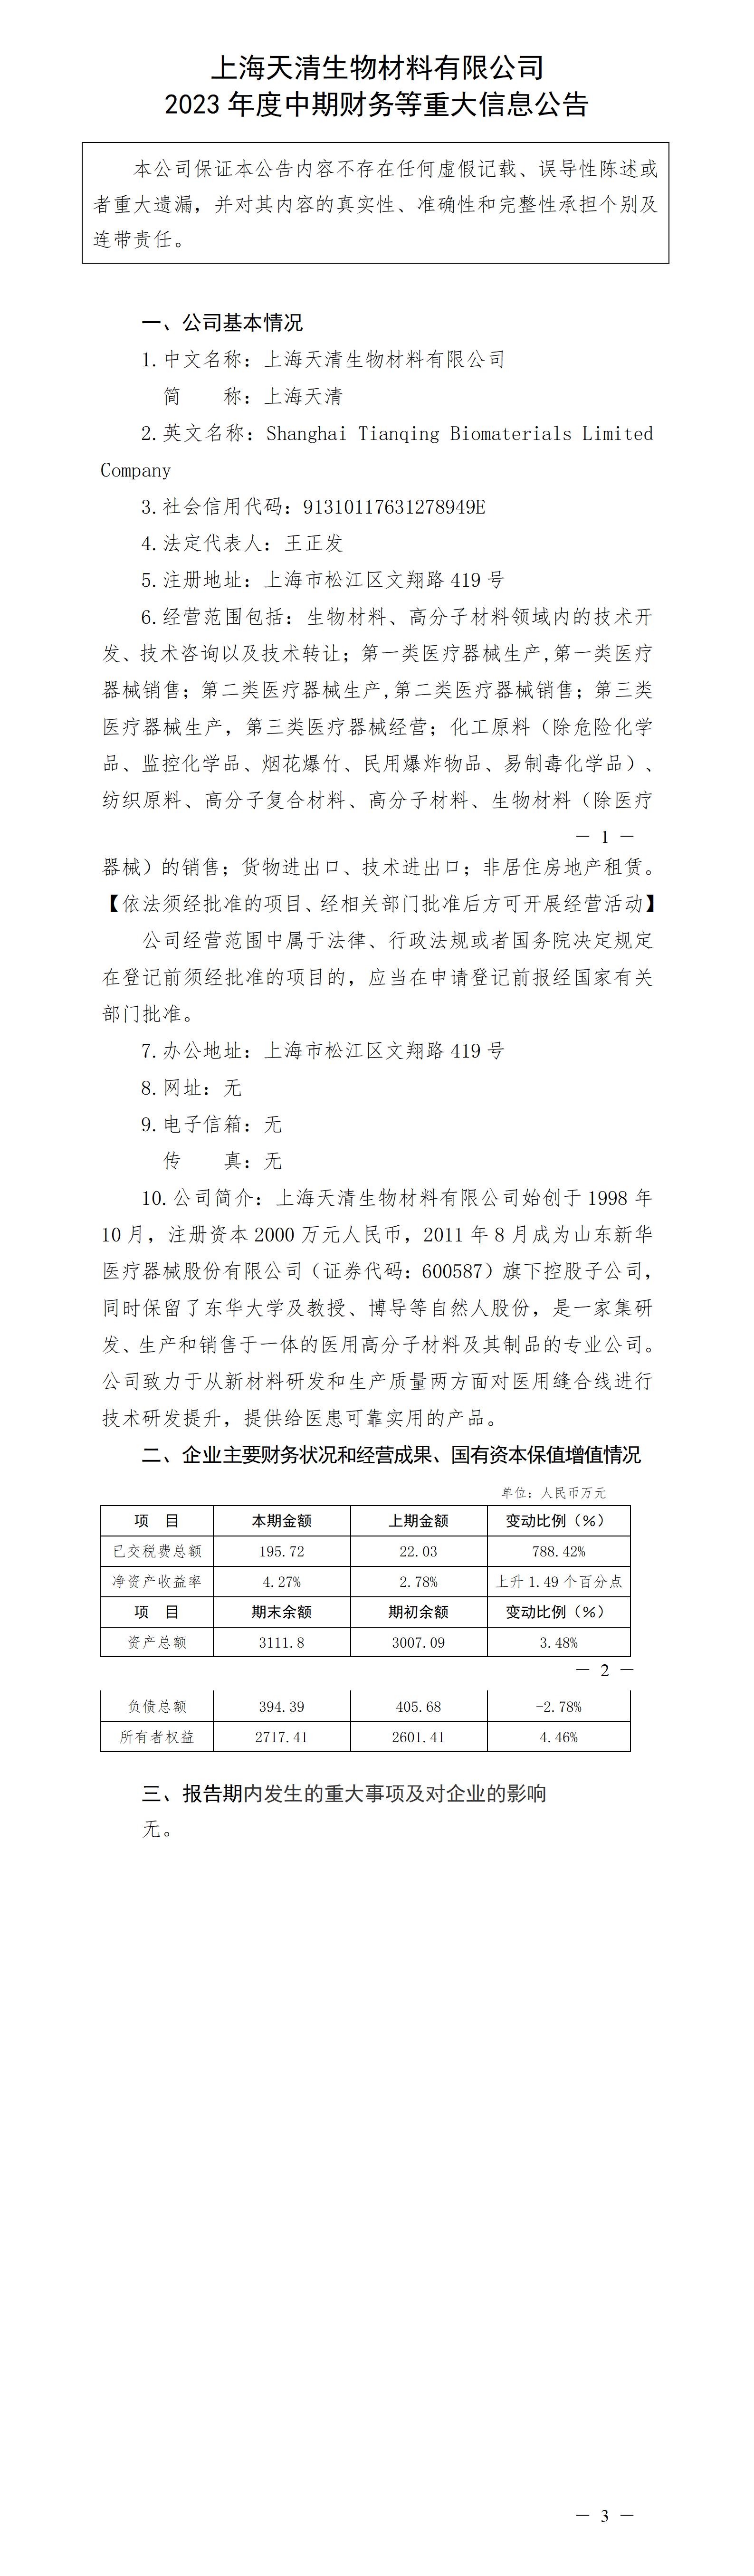 上海天清生物材料有限公司2023年度中期财务等重大信息公告_01.jpg